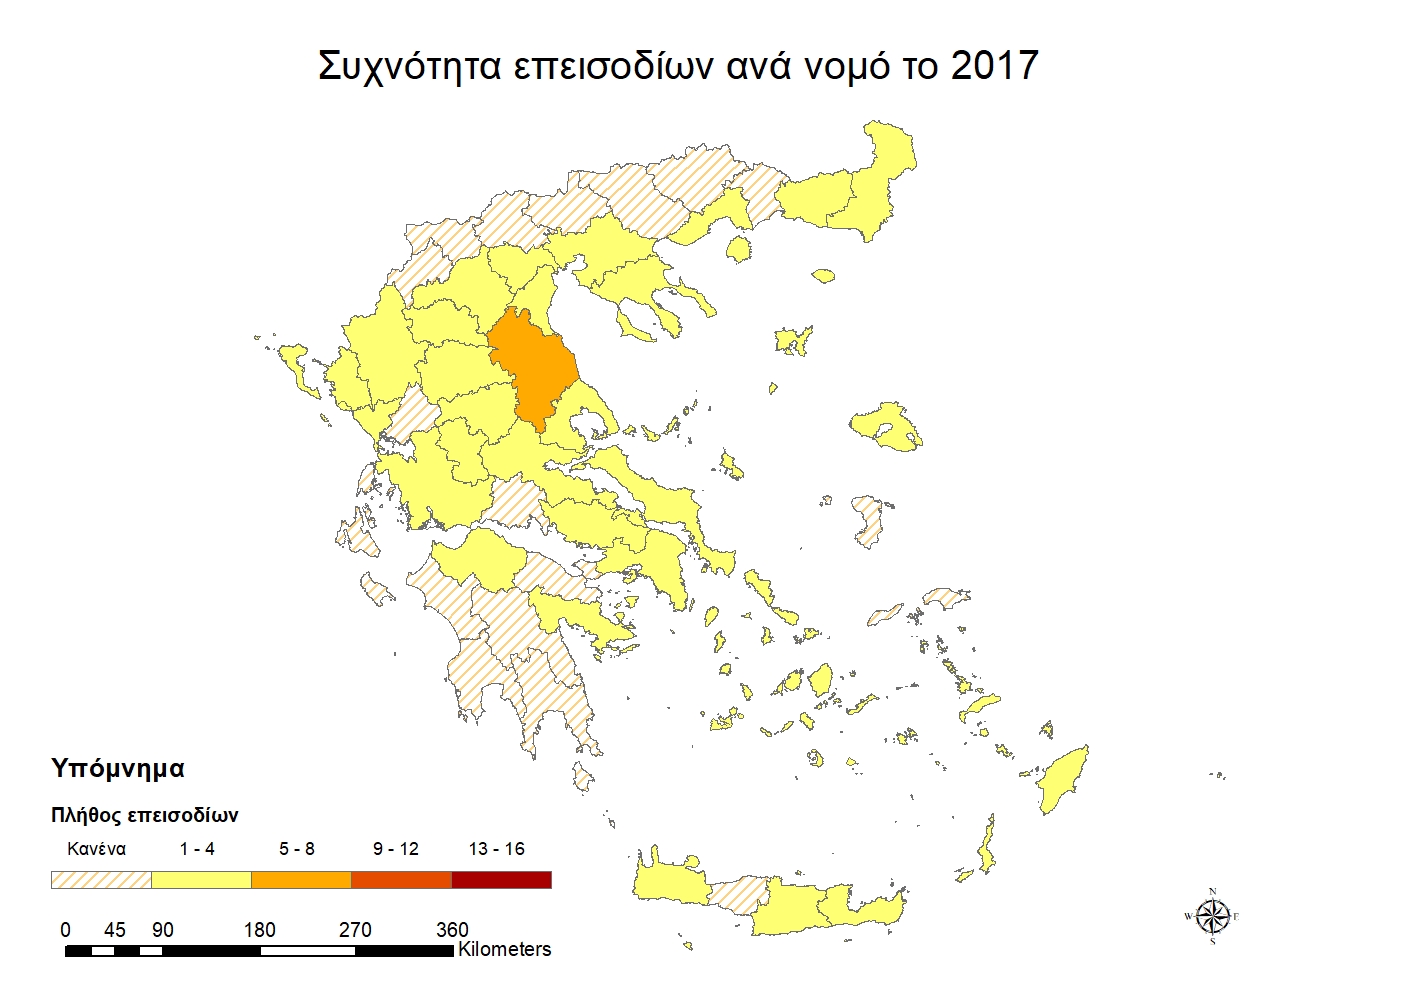 Χάρτης συχνότητας επεισοδίων ανά νομό για το έτος 2017